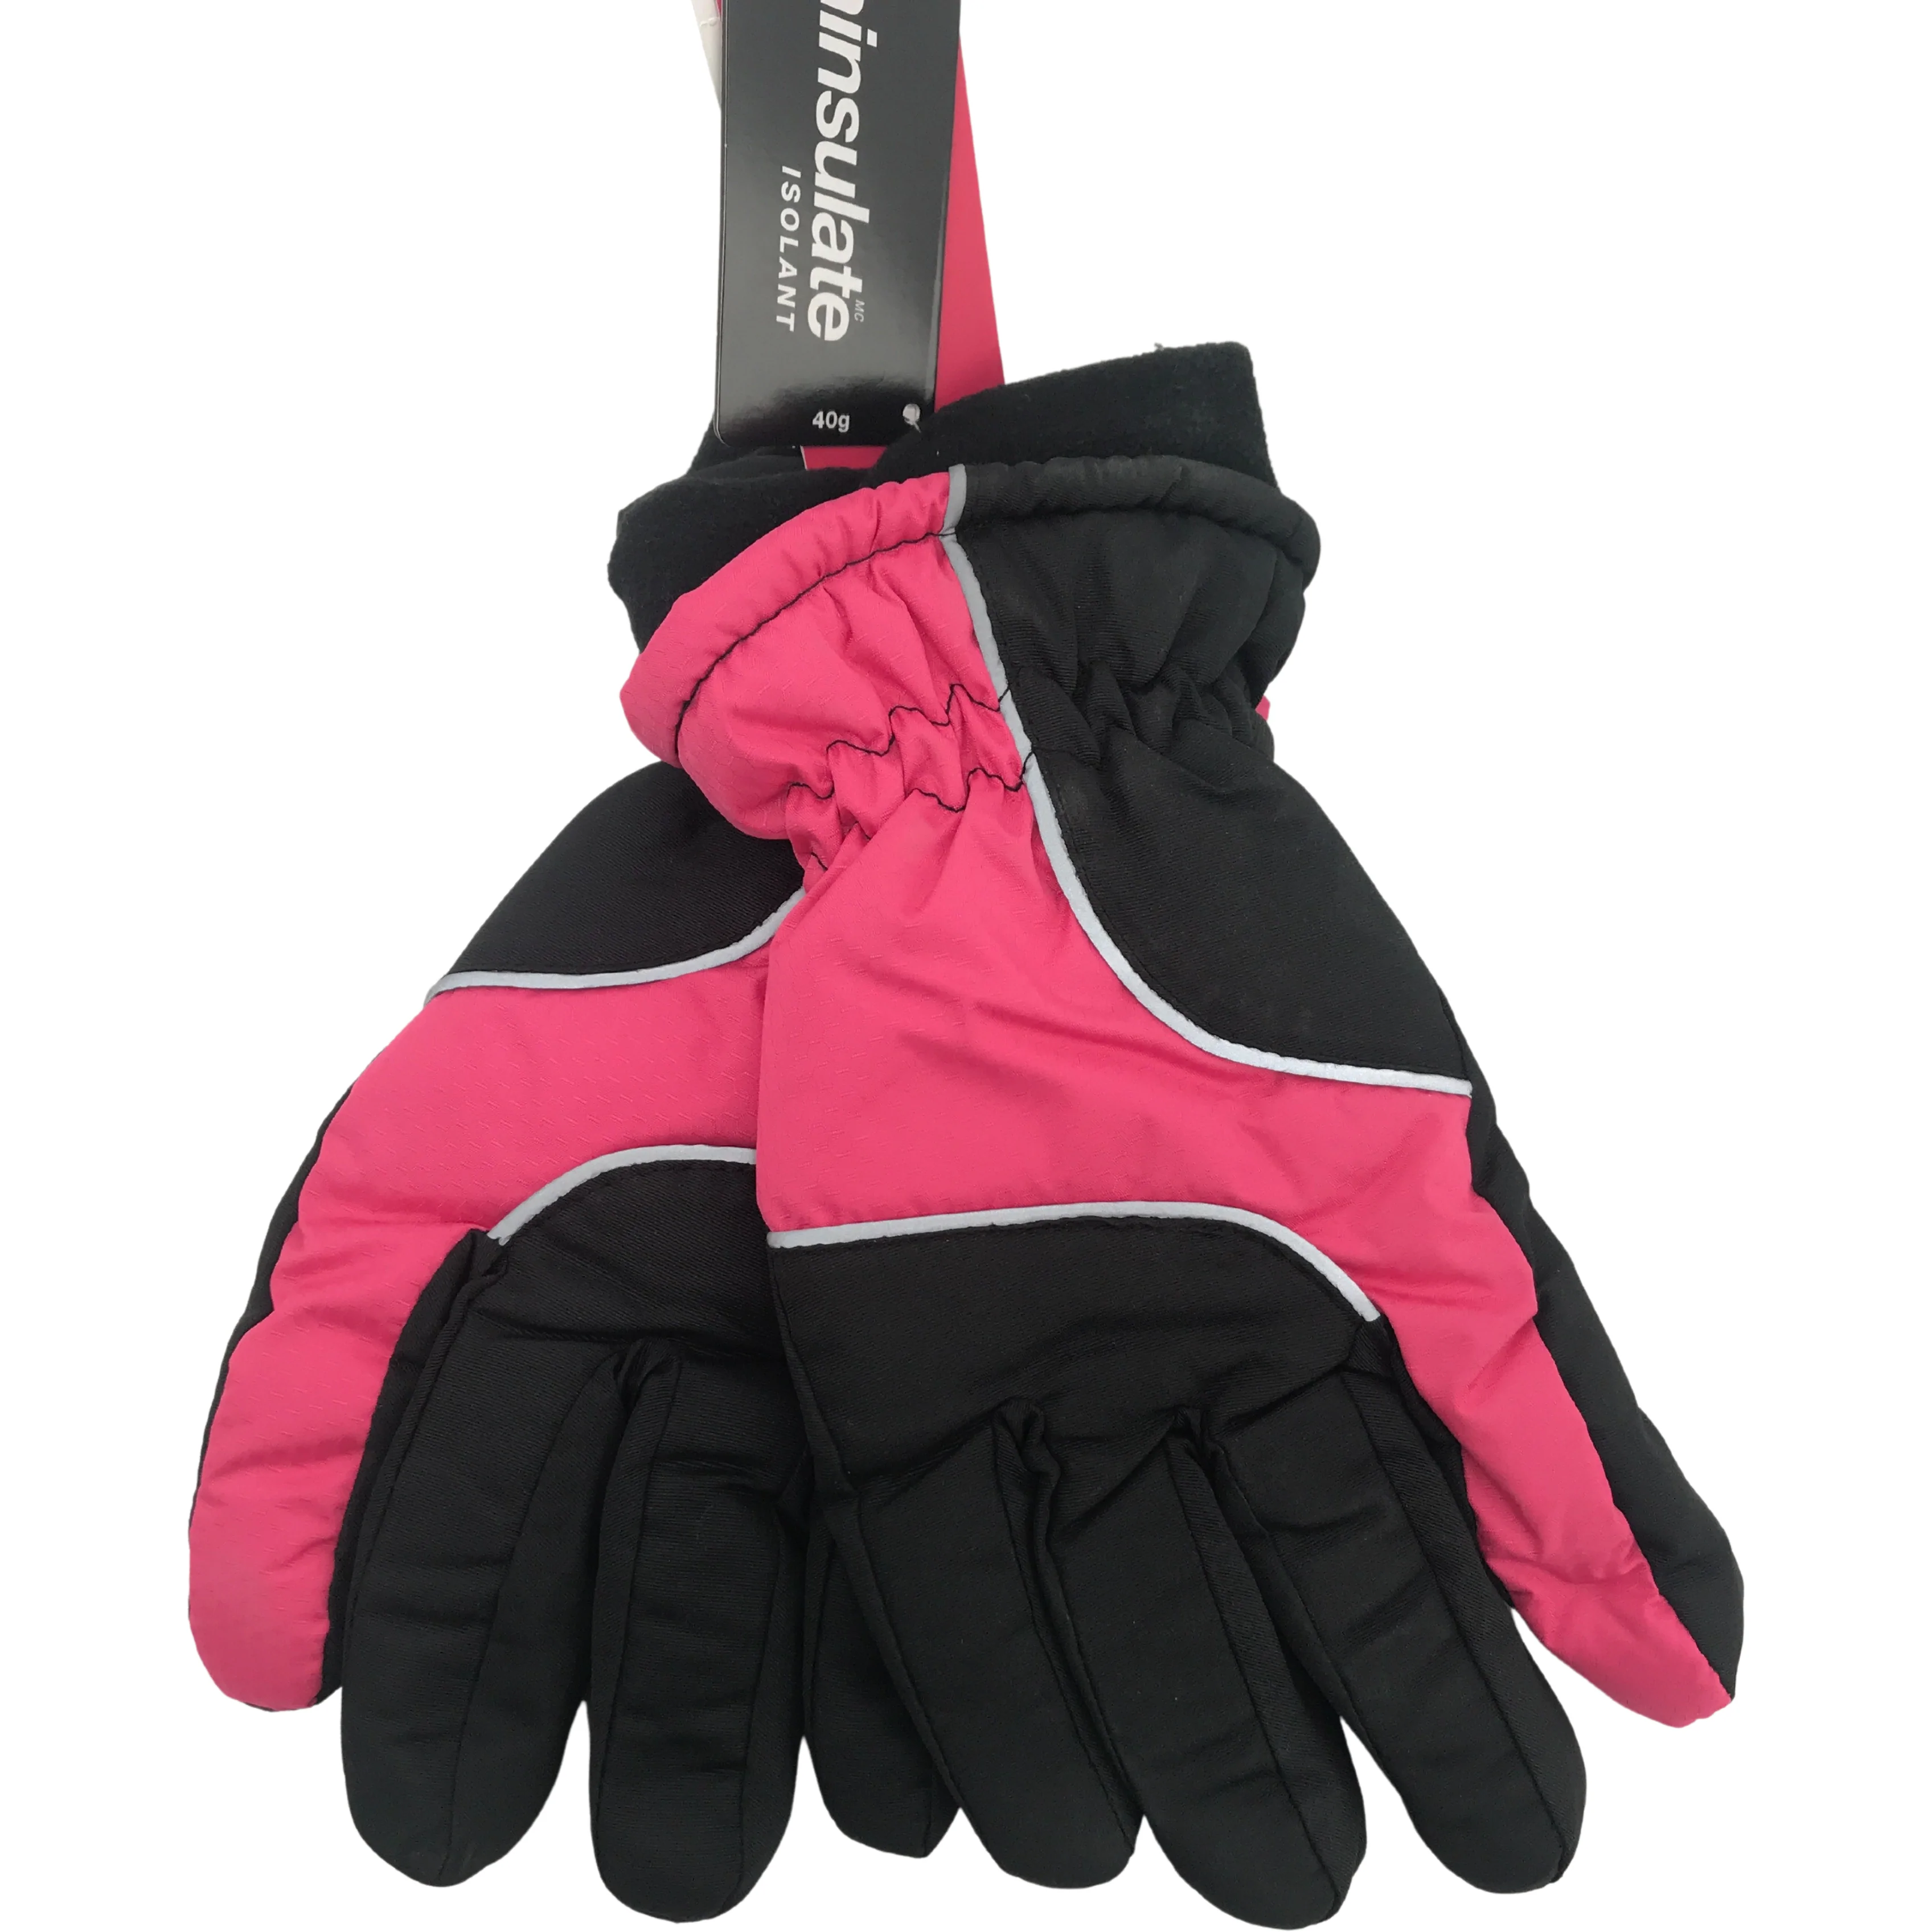 Minus Zero Children's Winter Gloves / Girl's Gloves / Black with Pink / Size 7-16